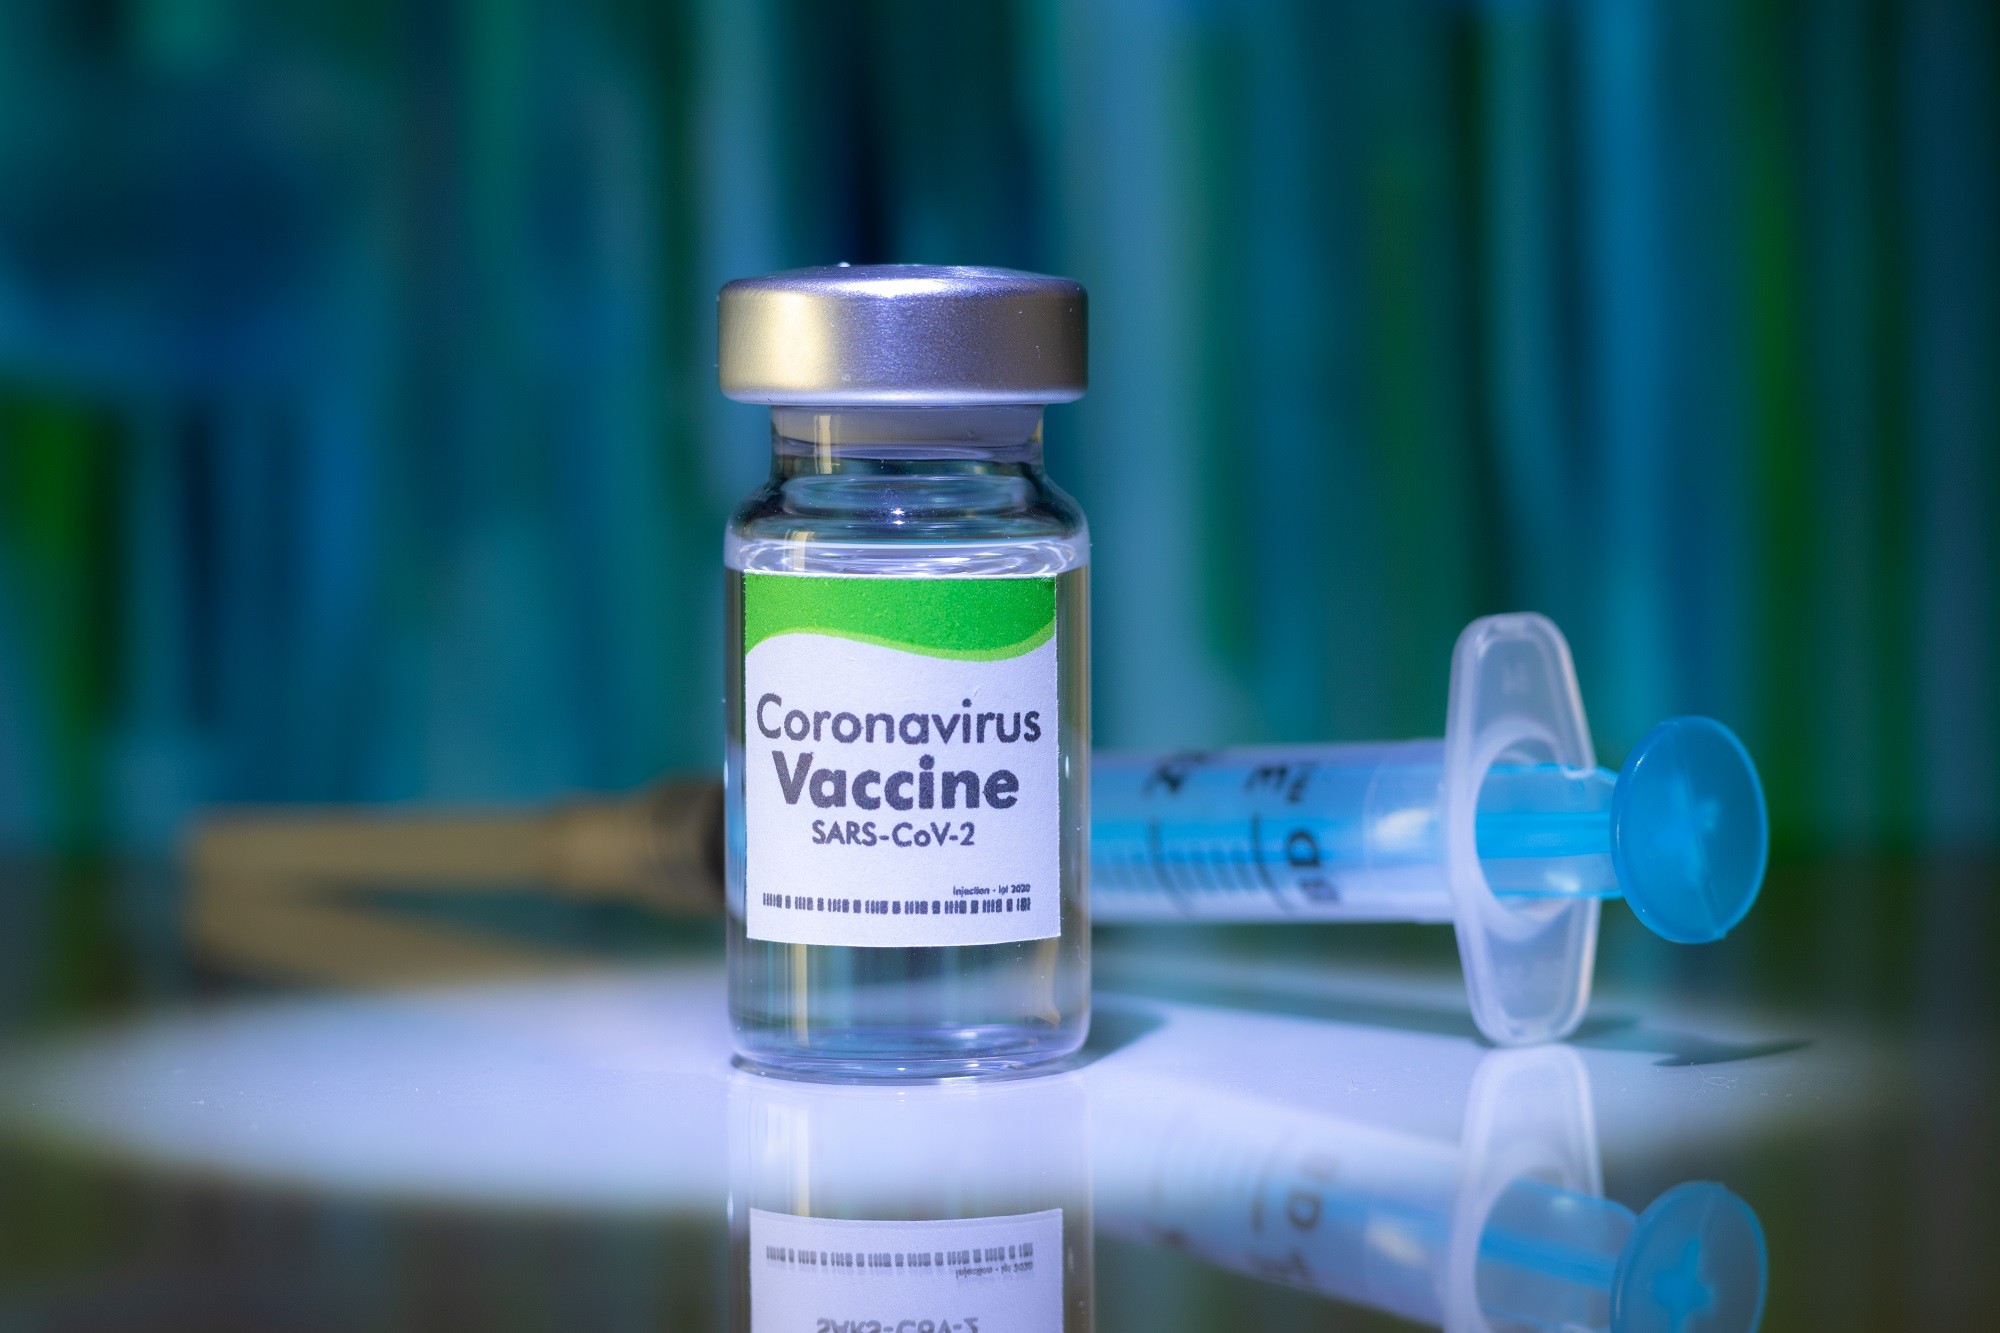 Sars cov 2 вакцина. Covid-19 вакцина. Рекомбинантные вирусные вакцины это. Первая вакцина против коронавируса.